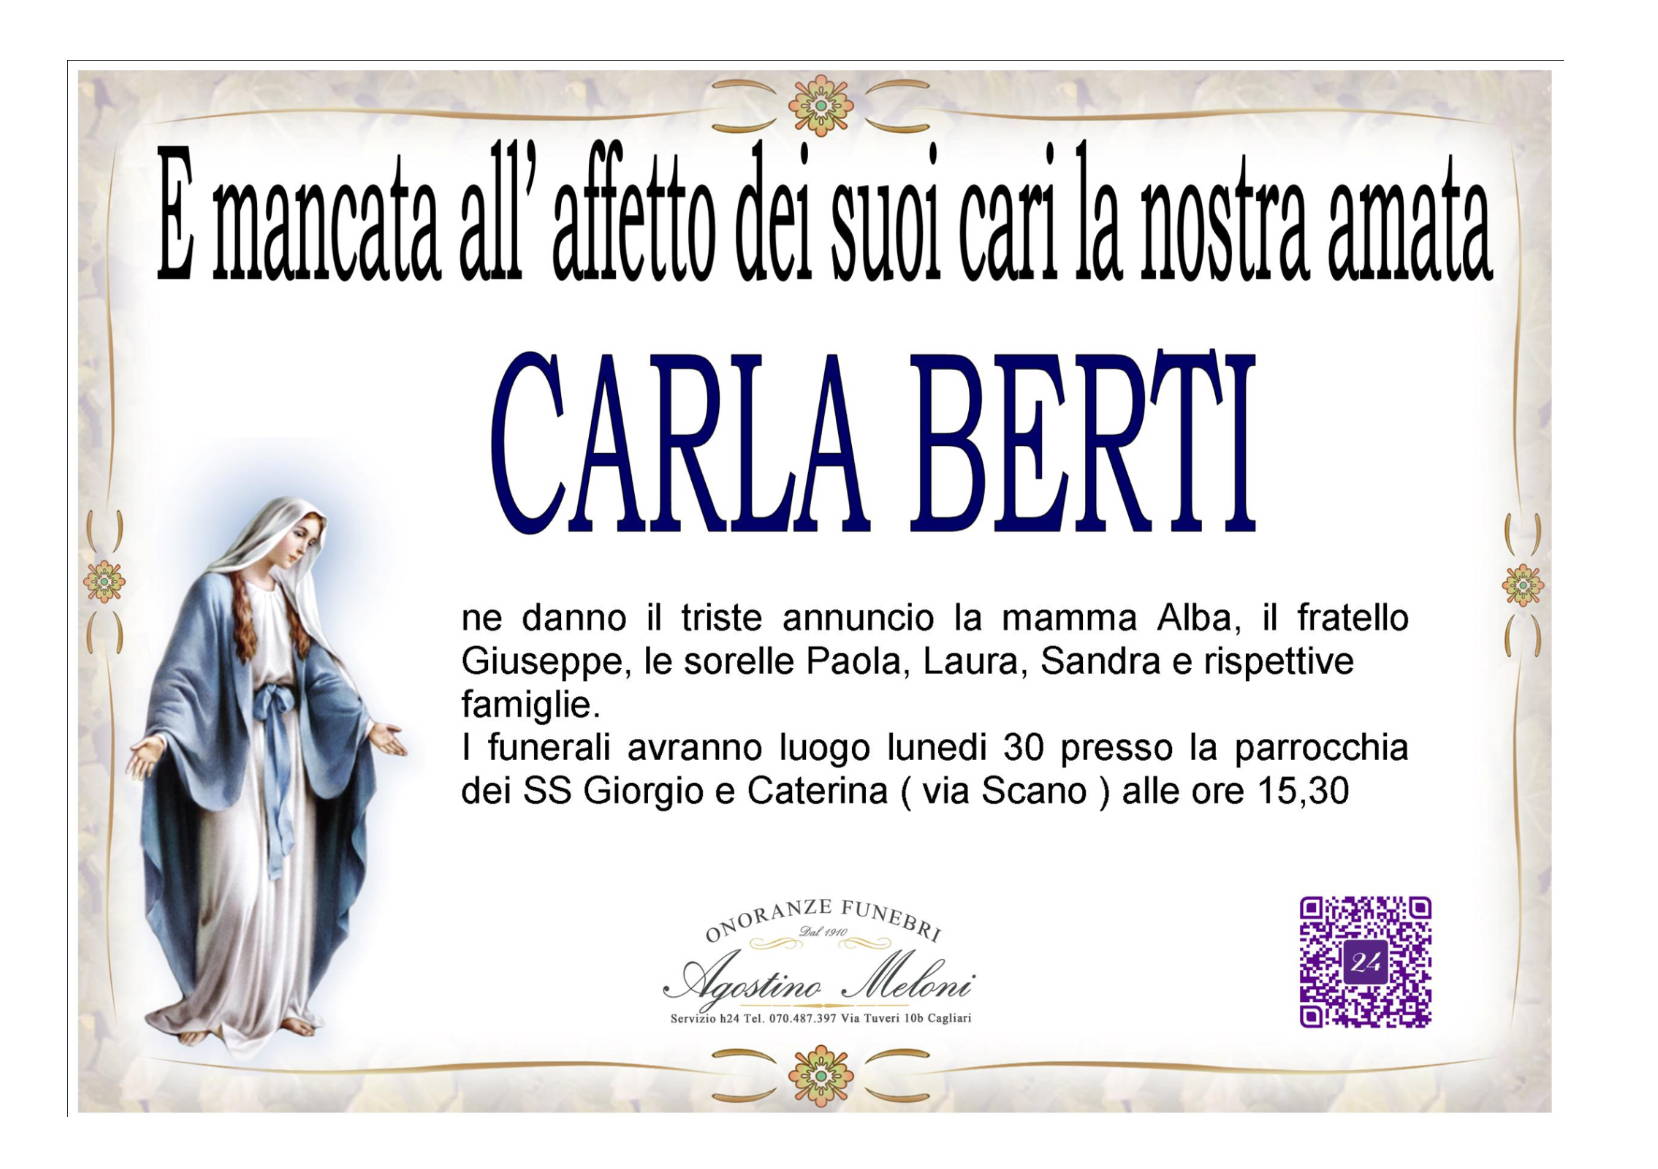 Carla Berti